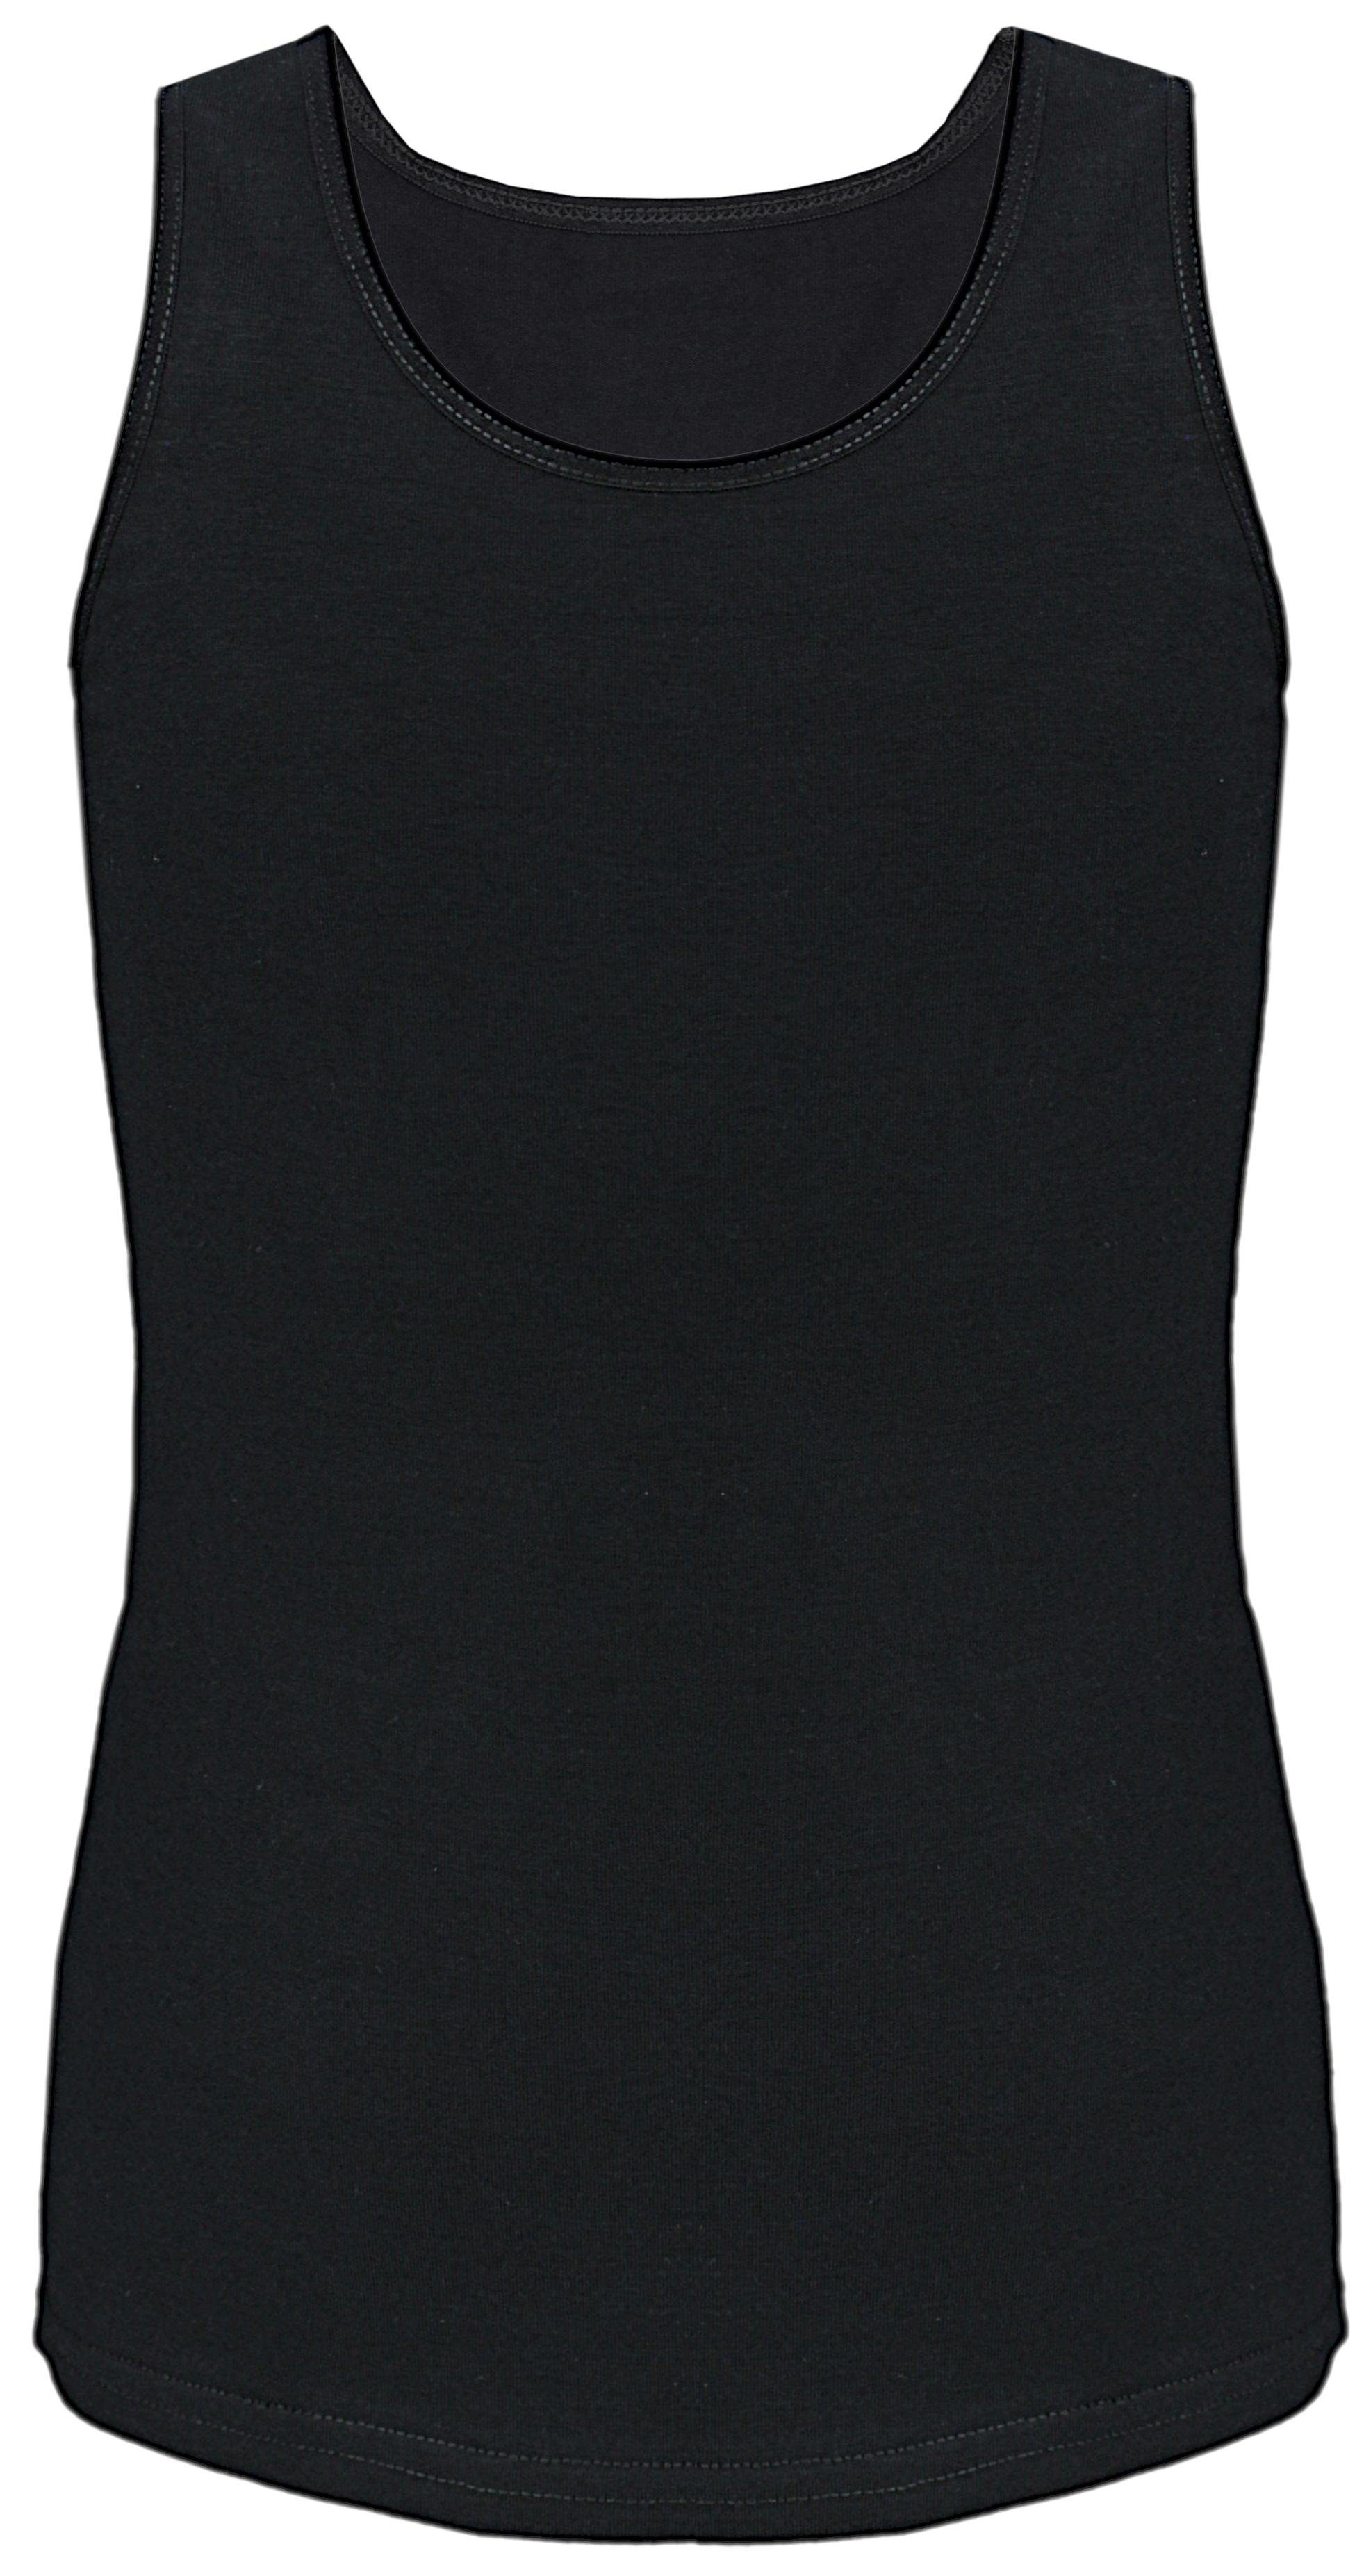 Top TupTam 5er Unterhemd Unterhemd TupTam Kinder Tank Baumwolle Pack Schwarz Ärmellos Mädchen